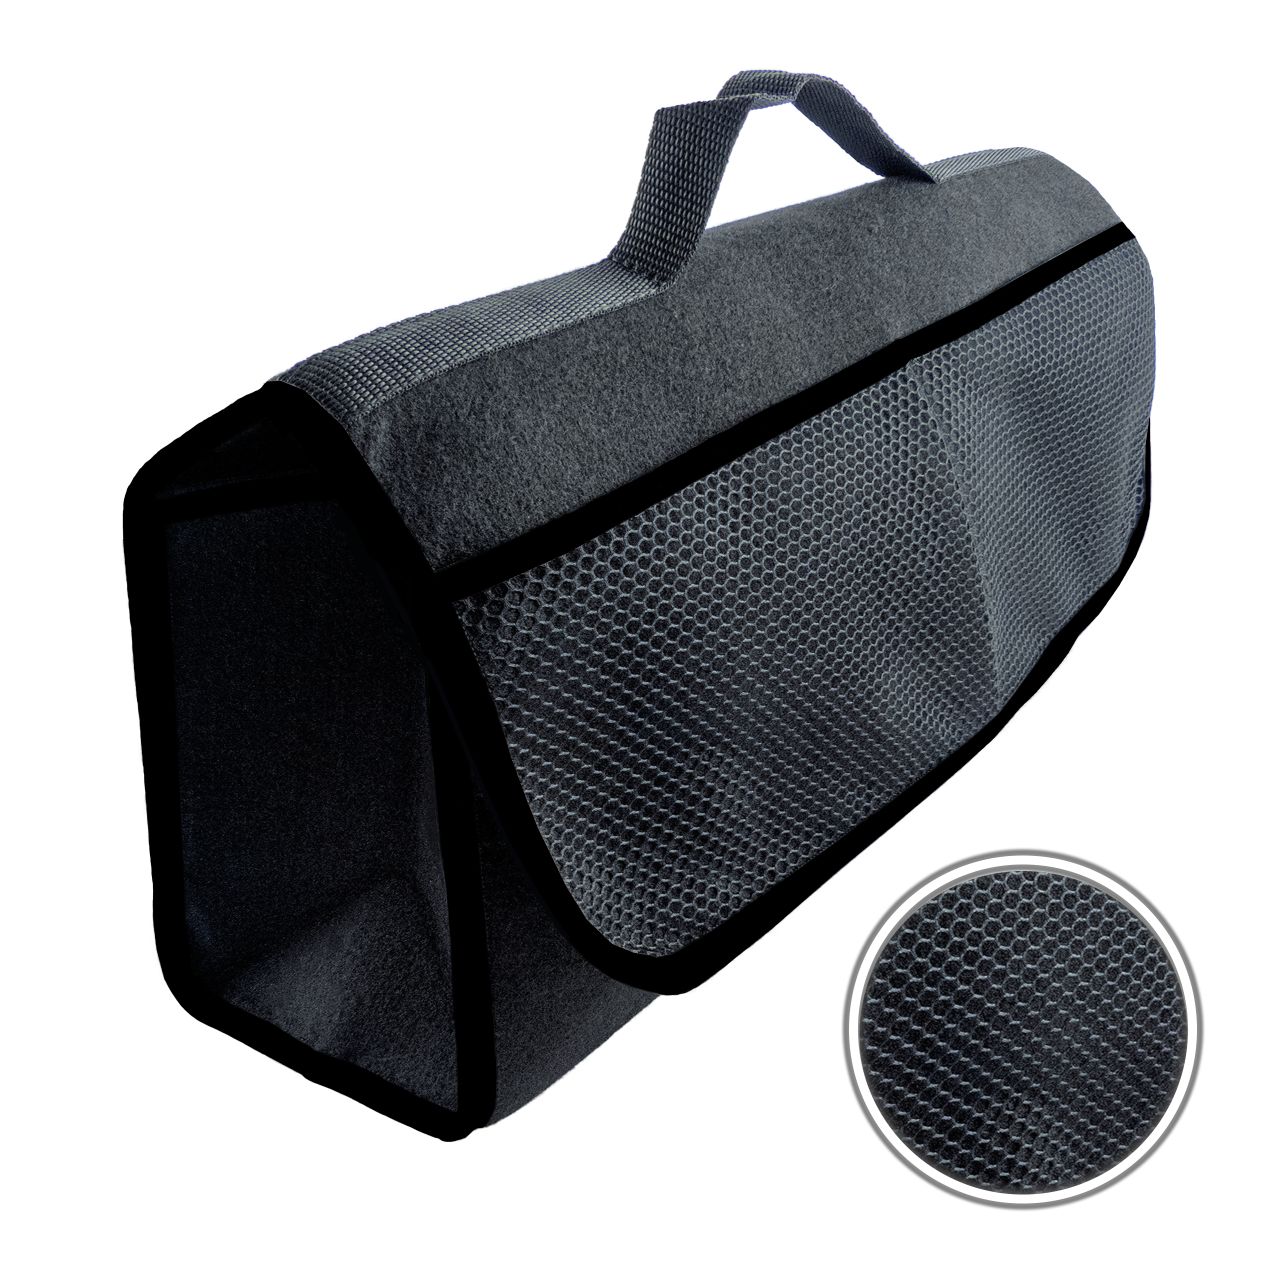 Kofferraumtasche Schwarz mit Klettbefestigung für einen sicheren Halt im Kofferraum